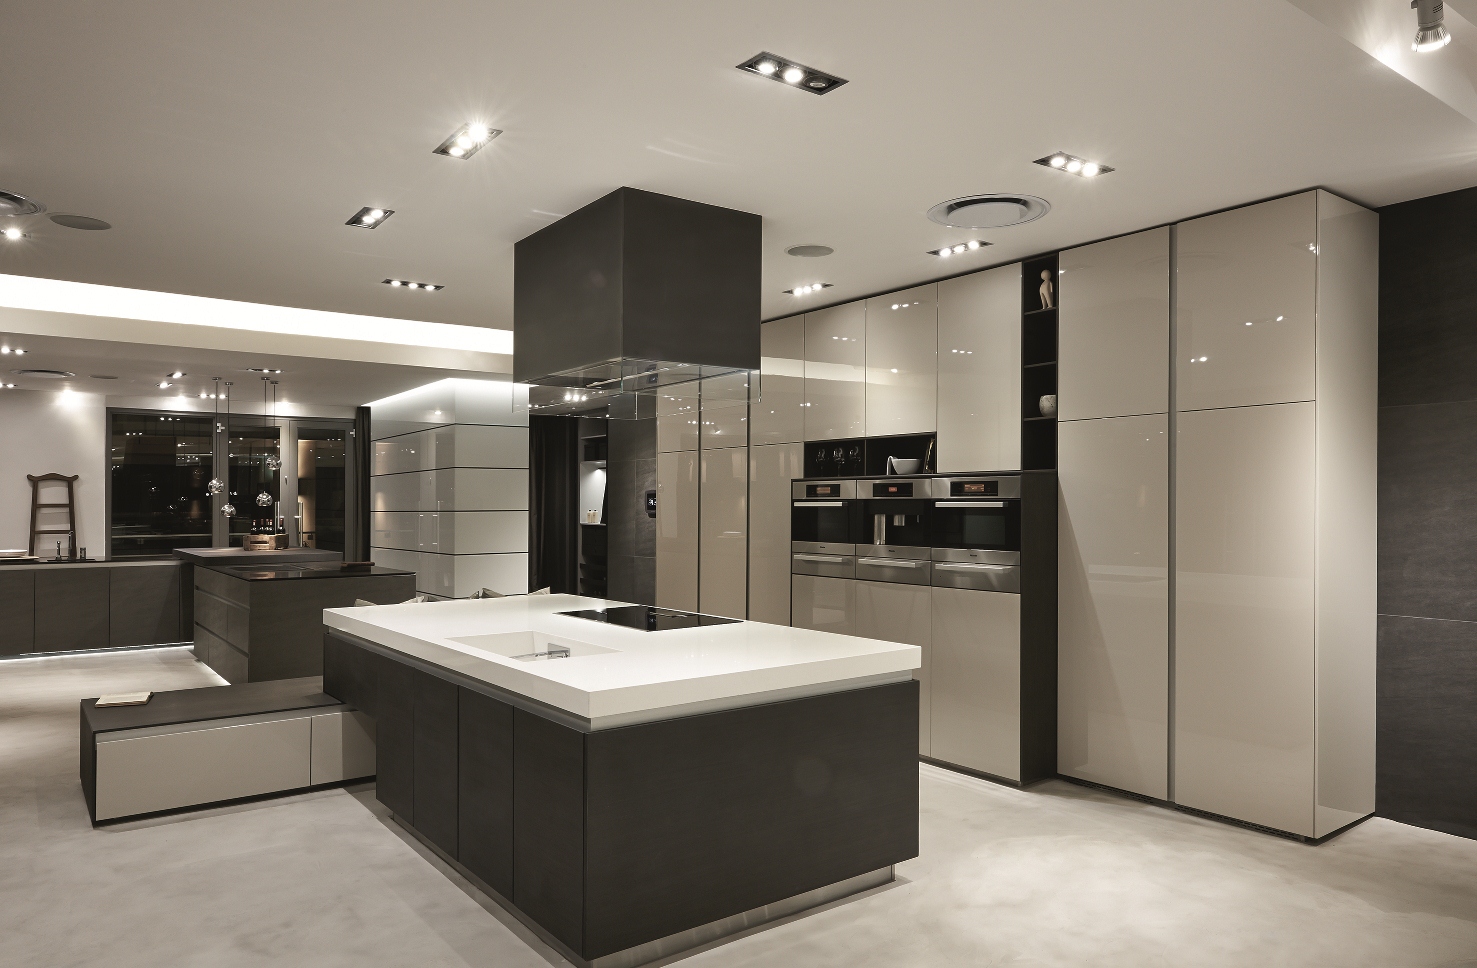 kitchen showroom design ideas